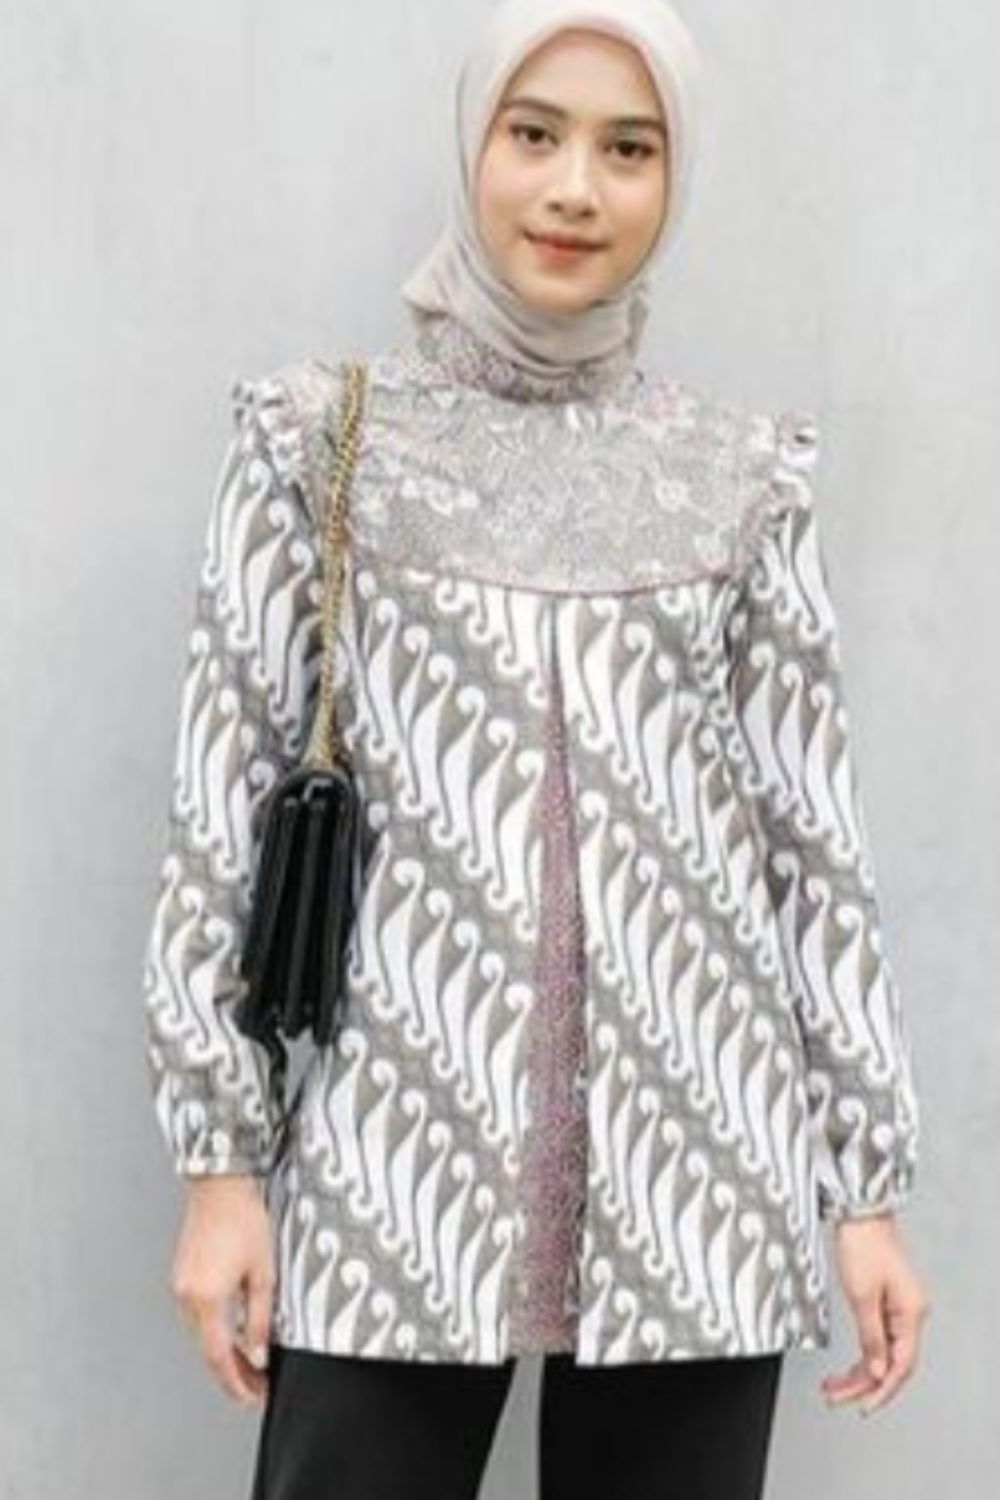 Batik Shirt Blouse Model for Girls